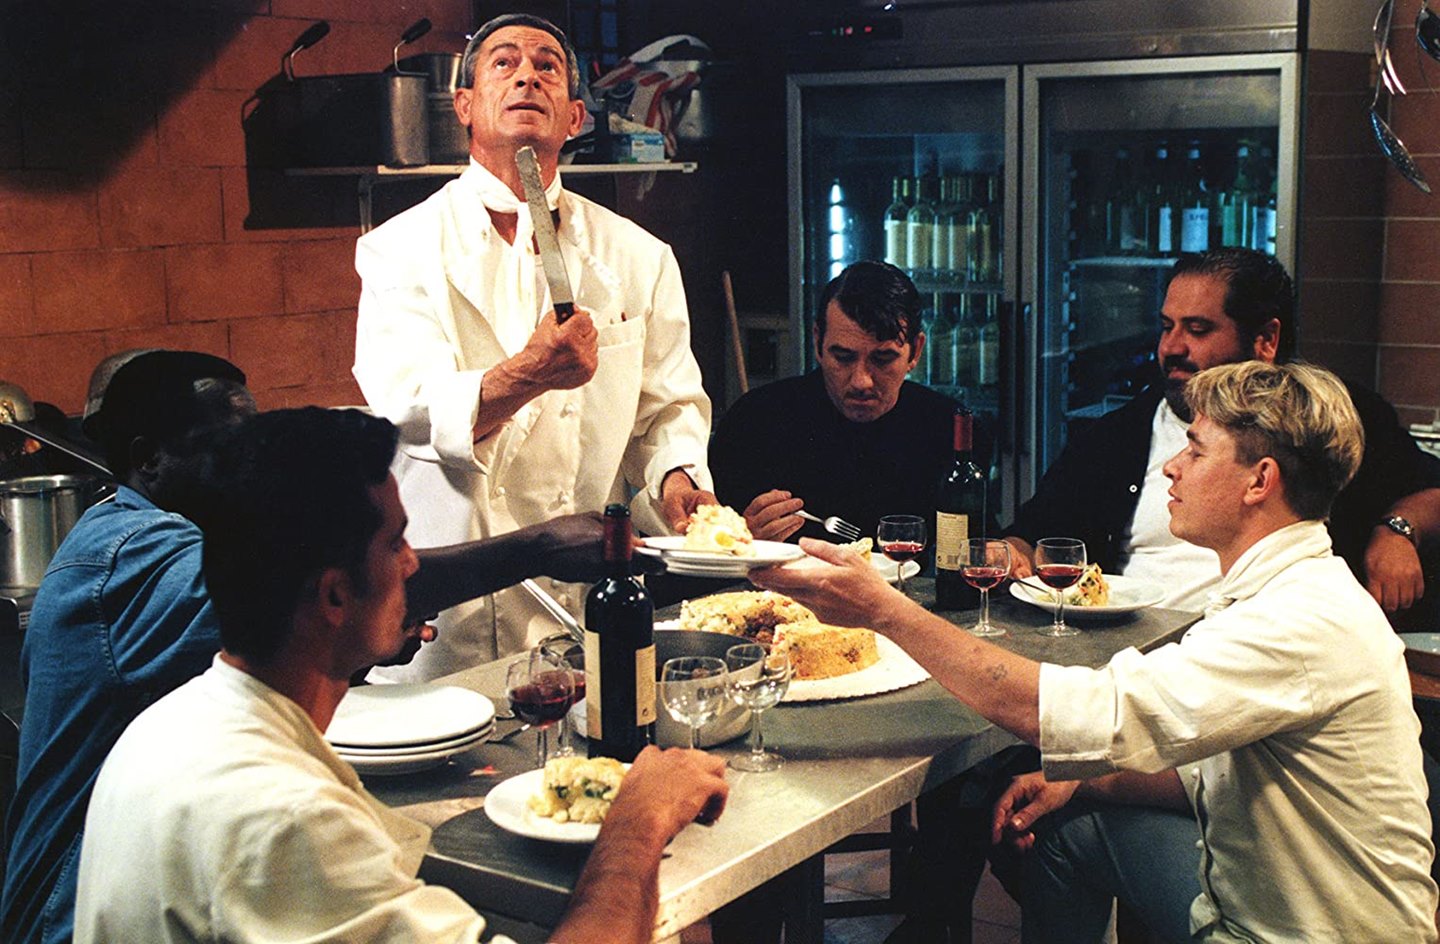 La cena (1998) di Ettore Scola - Recensione